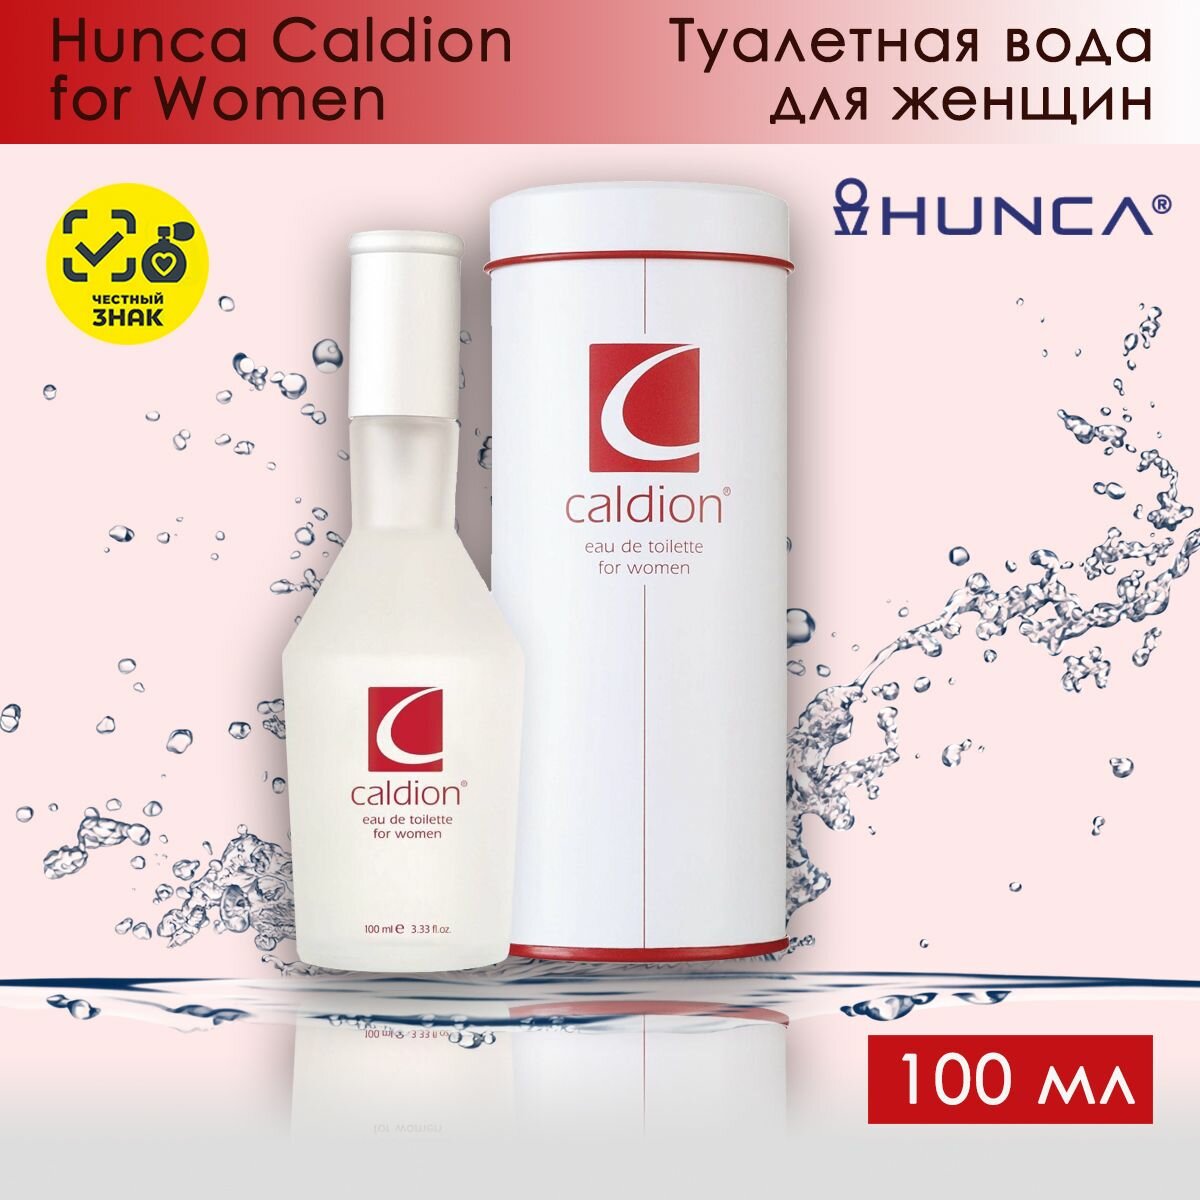 Hunca Caldion for Women / Калдион Туалетная вода женская 100 мл